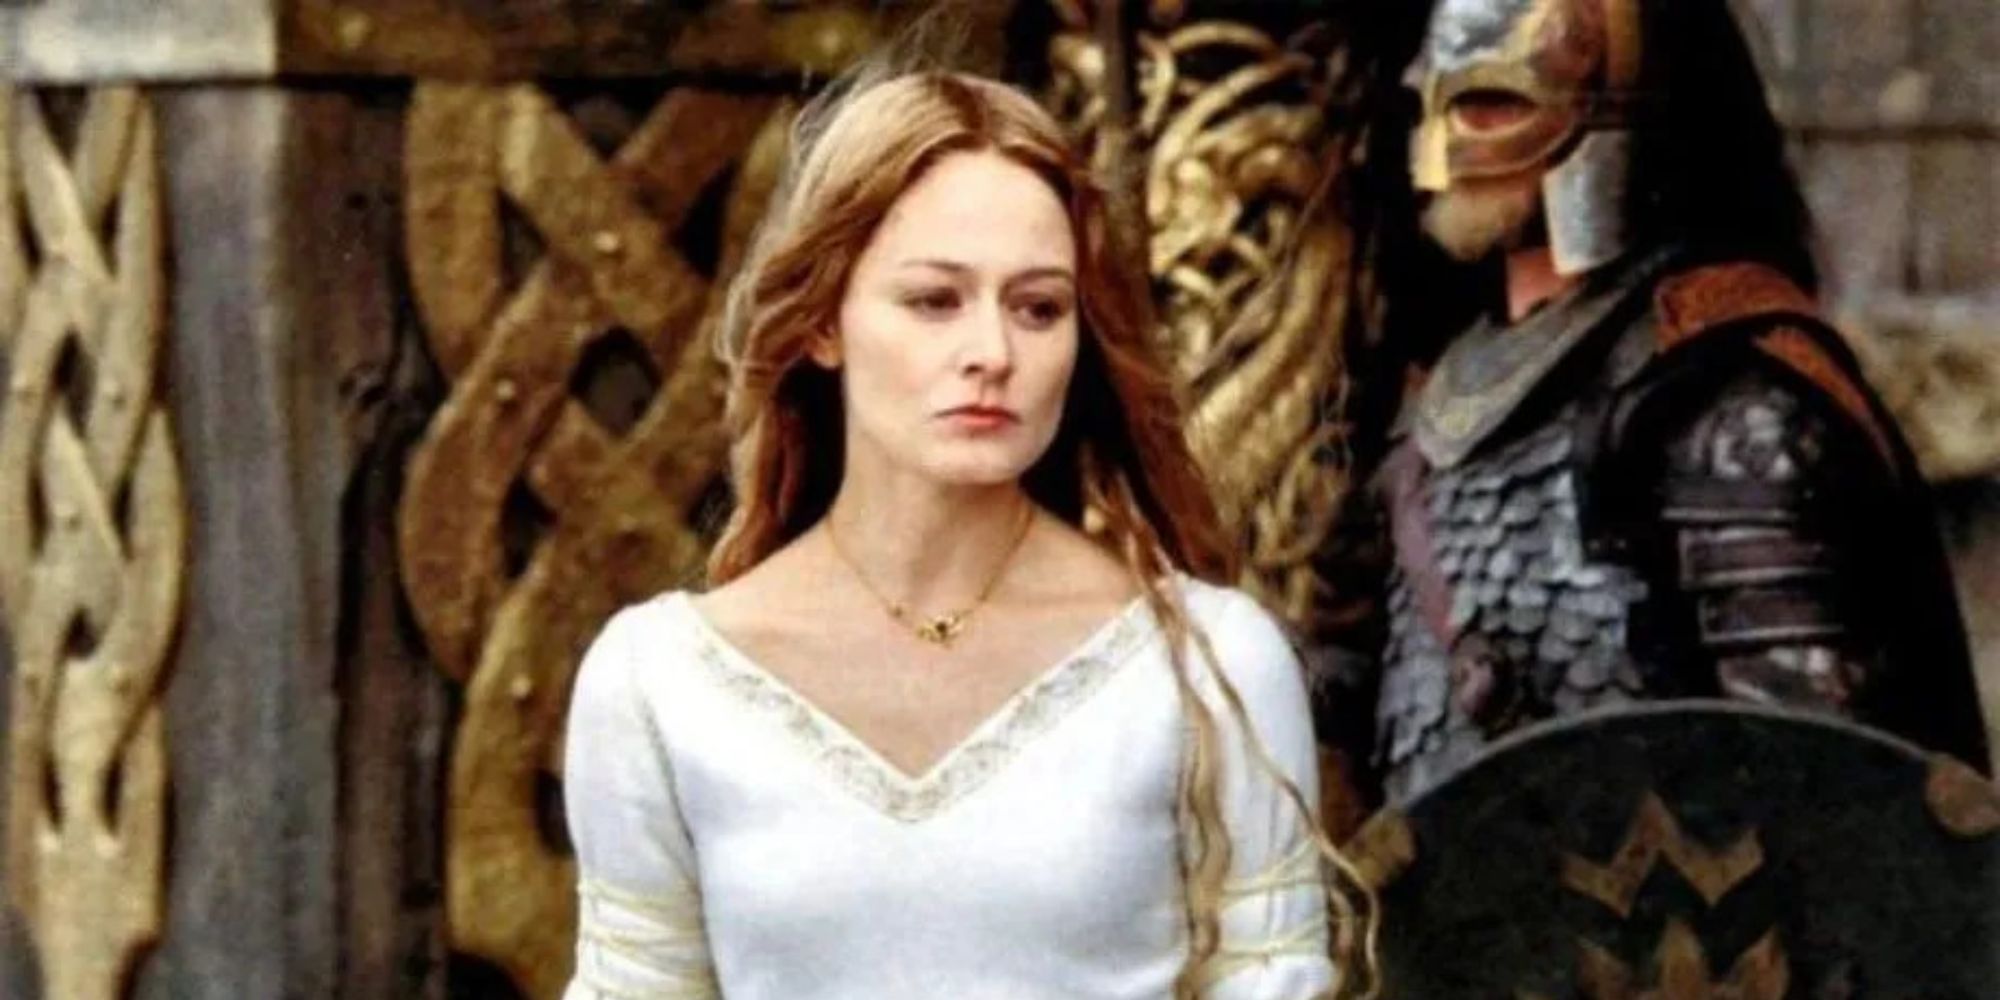 Eowyn in her white dress